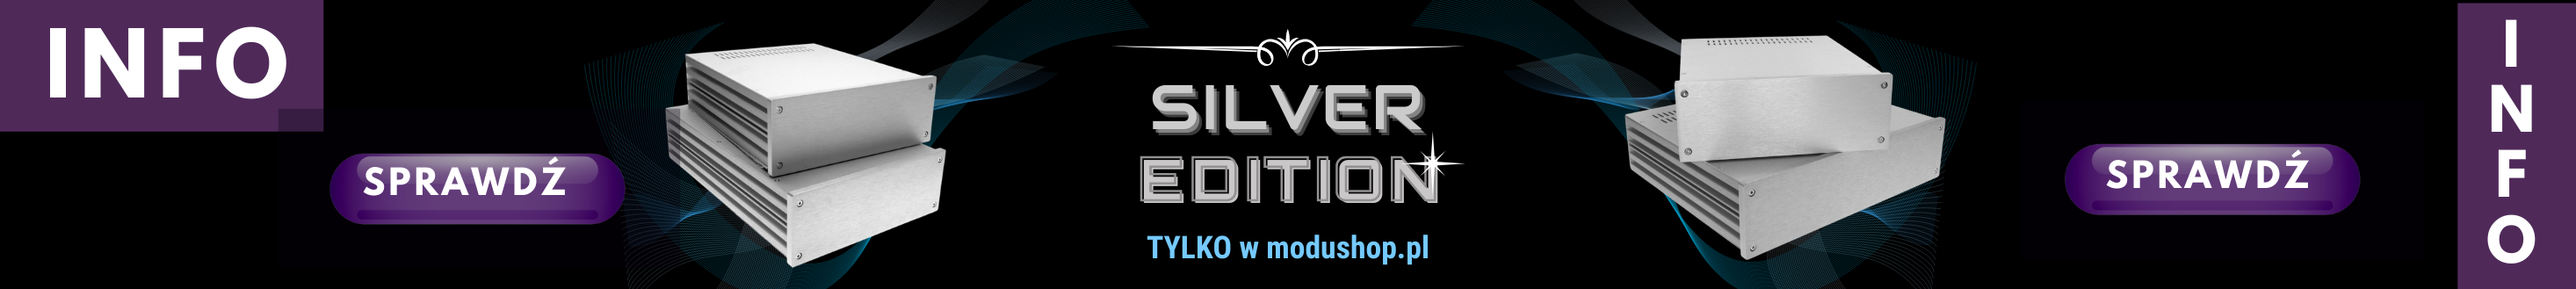 Obudowy Galaxy Silver, wersja limitowana